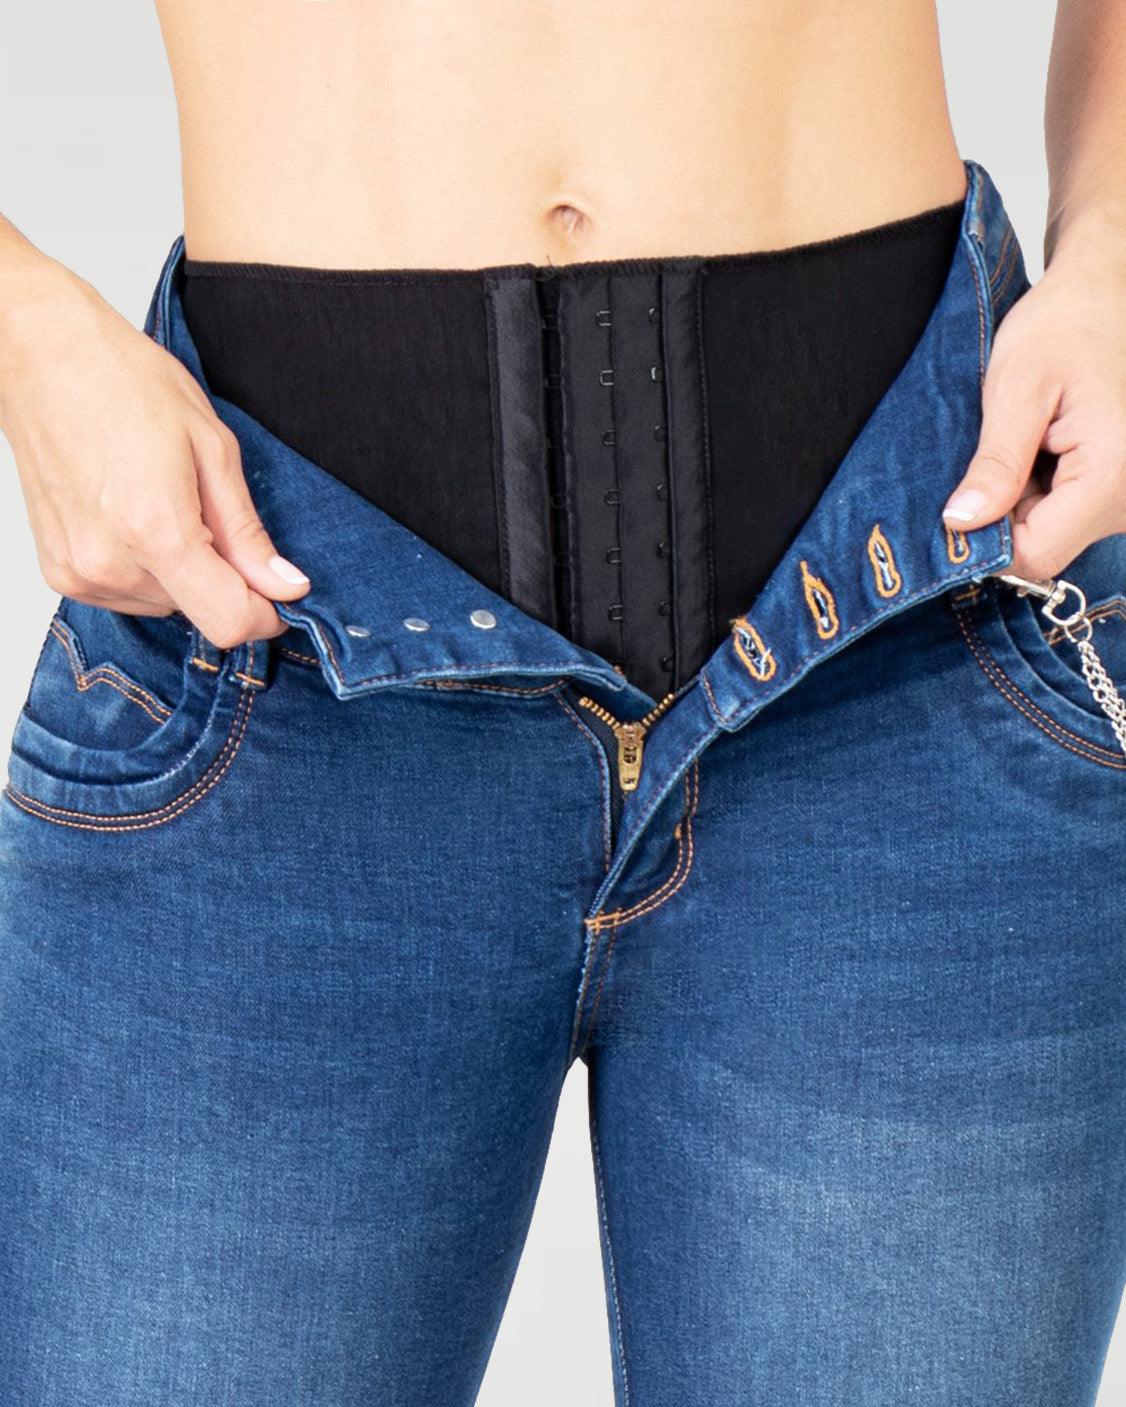 Wishe Skinny Curvy Jeans with Internal Girdle Tummy Control